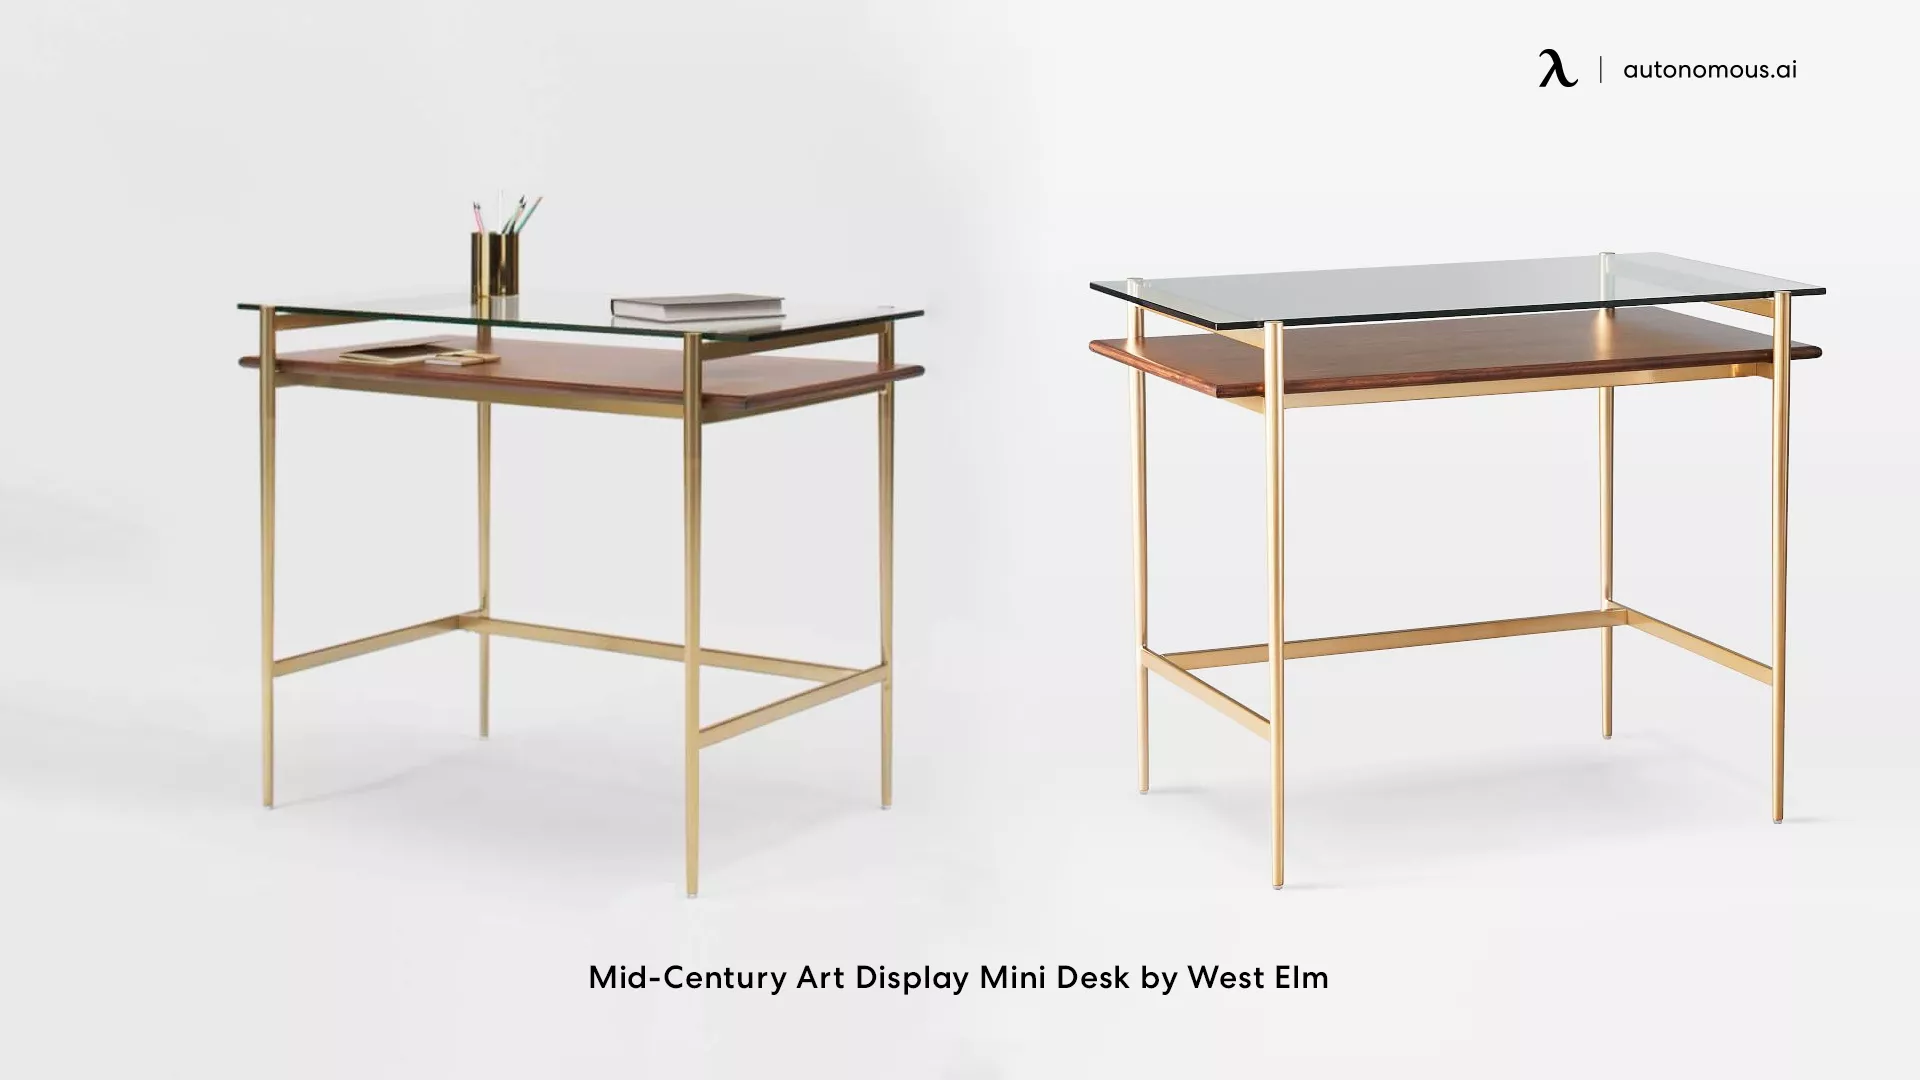 Mid-Century Art Display Mini Desk